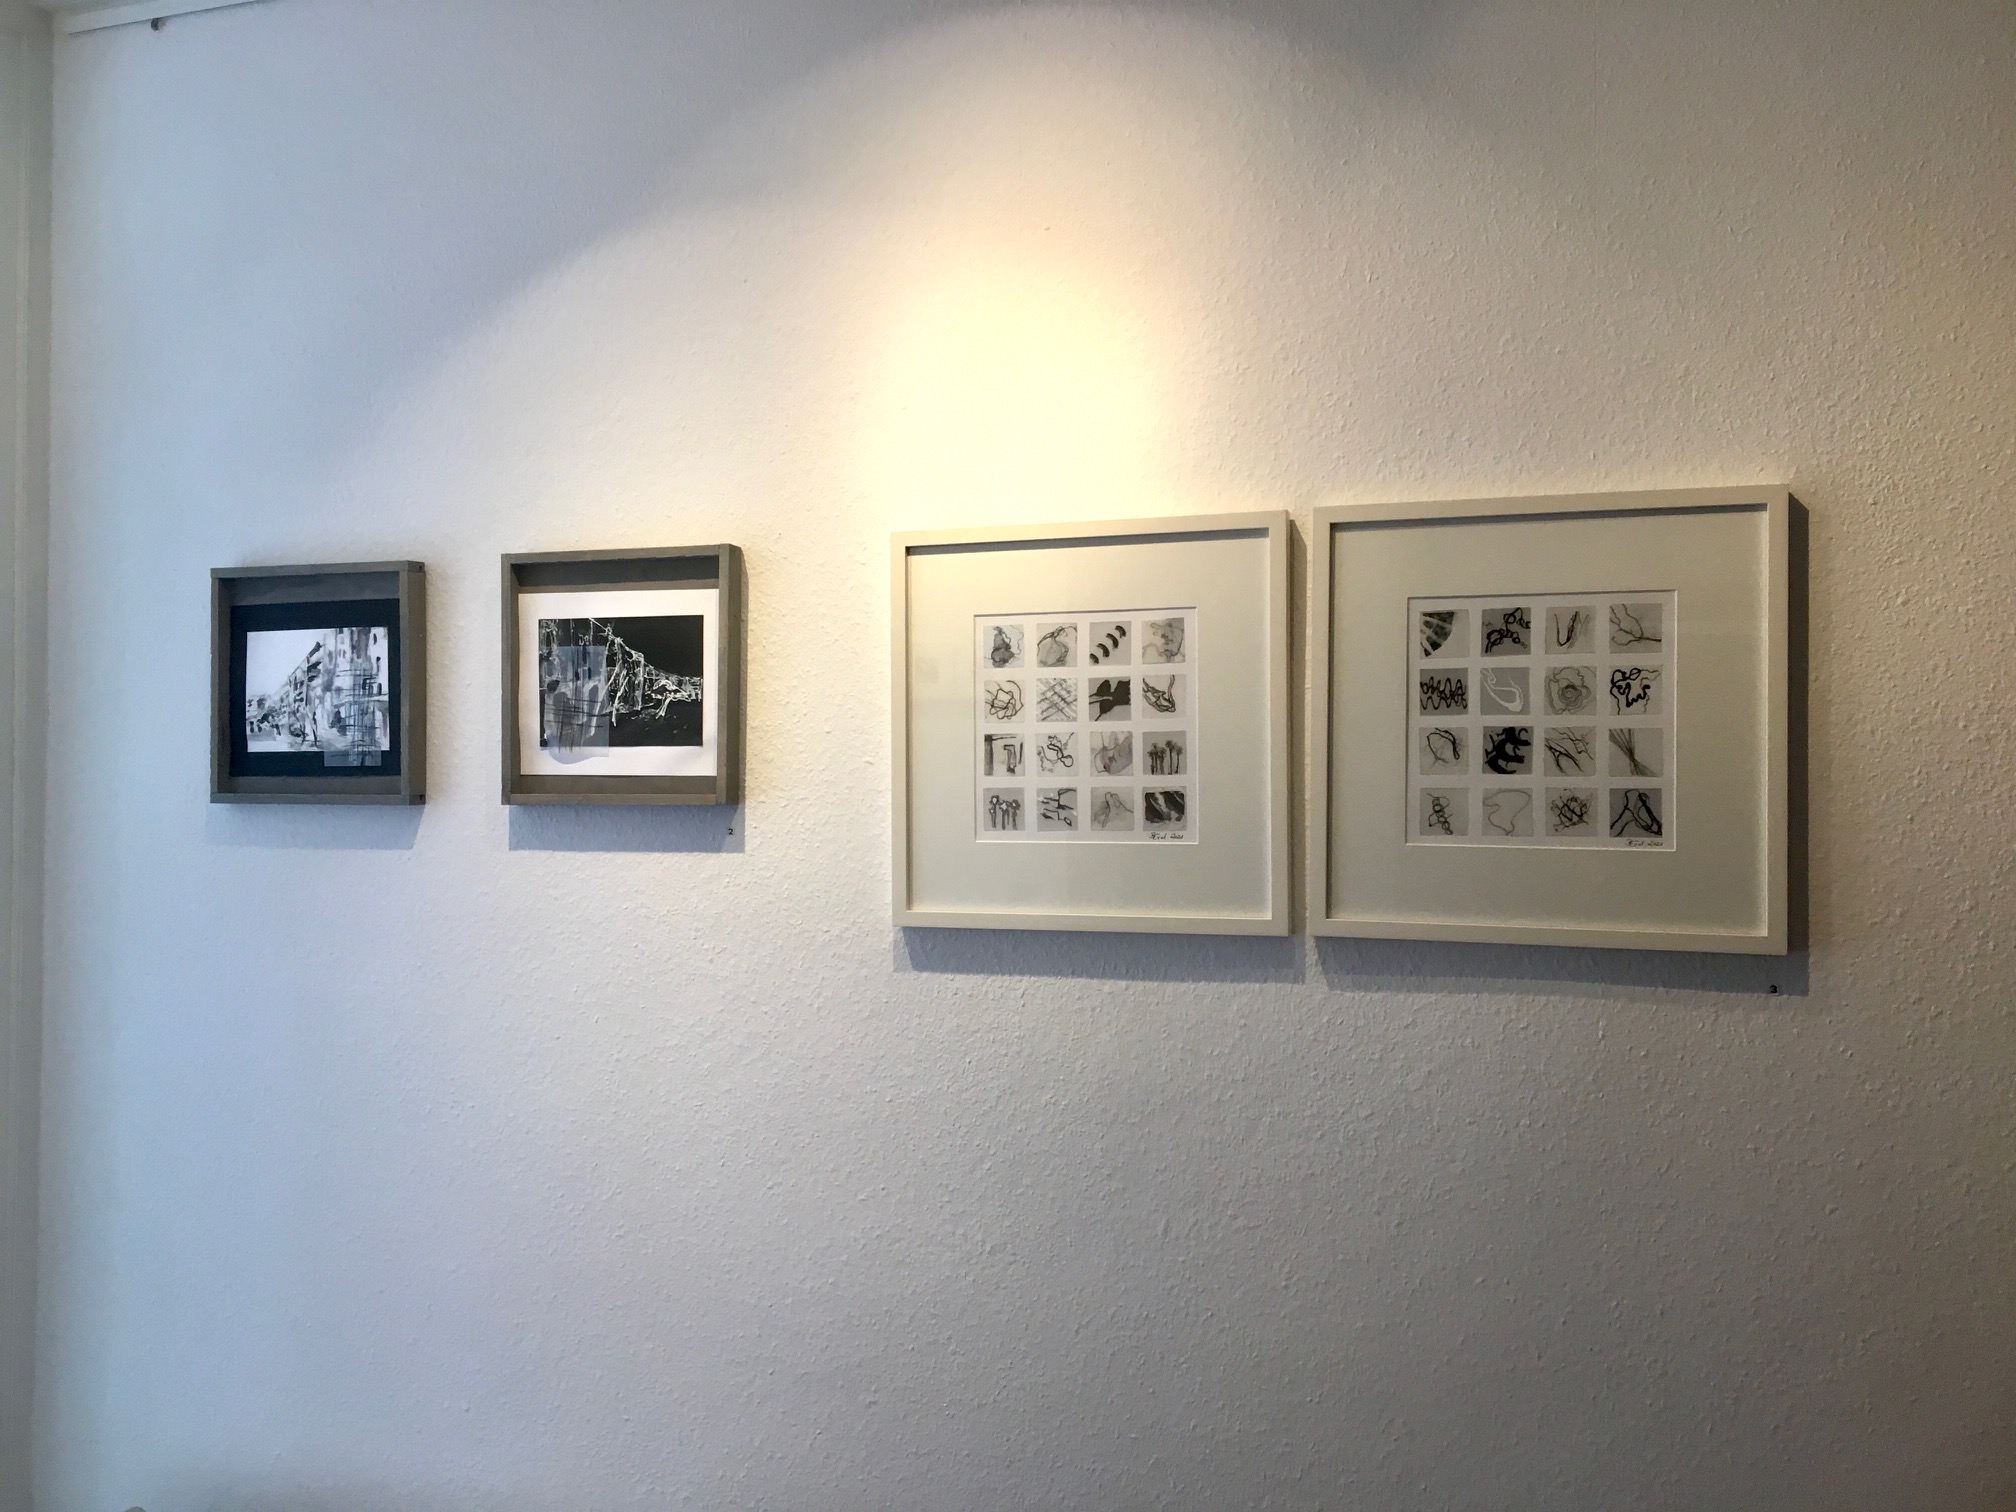 Foto 15 der Ausstellung 'Schwarz-Weiß'